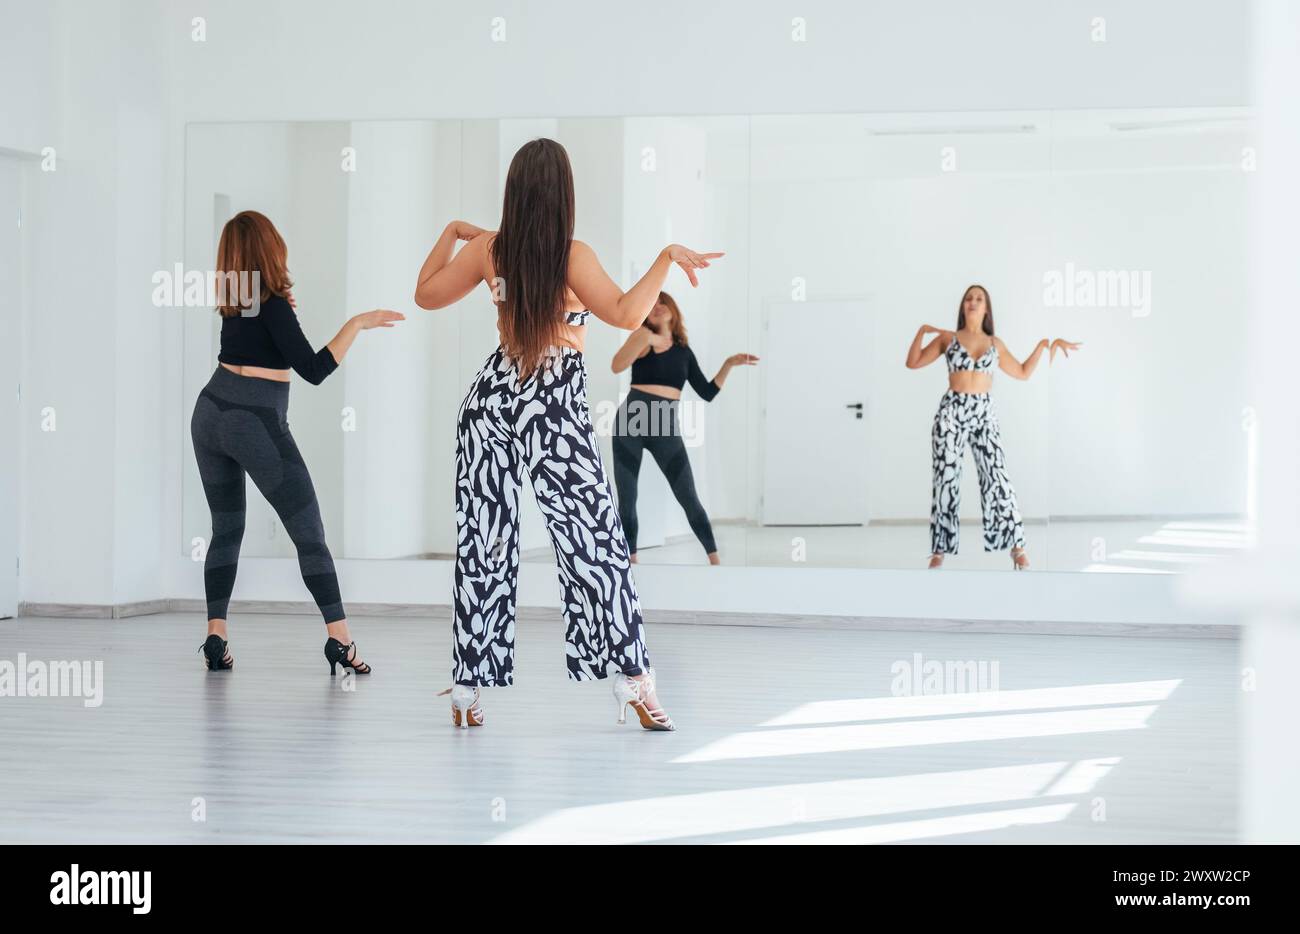 Groupe de femmes dansantes gracieuses faisant des mouvements de danse élégants dans la salle spacieuse de couleur blanche avec grand mur de miroir.expressions des gens pendant la danse, beau Banque D'Images